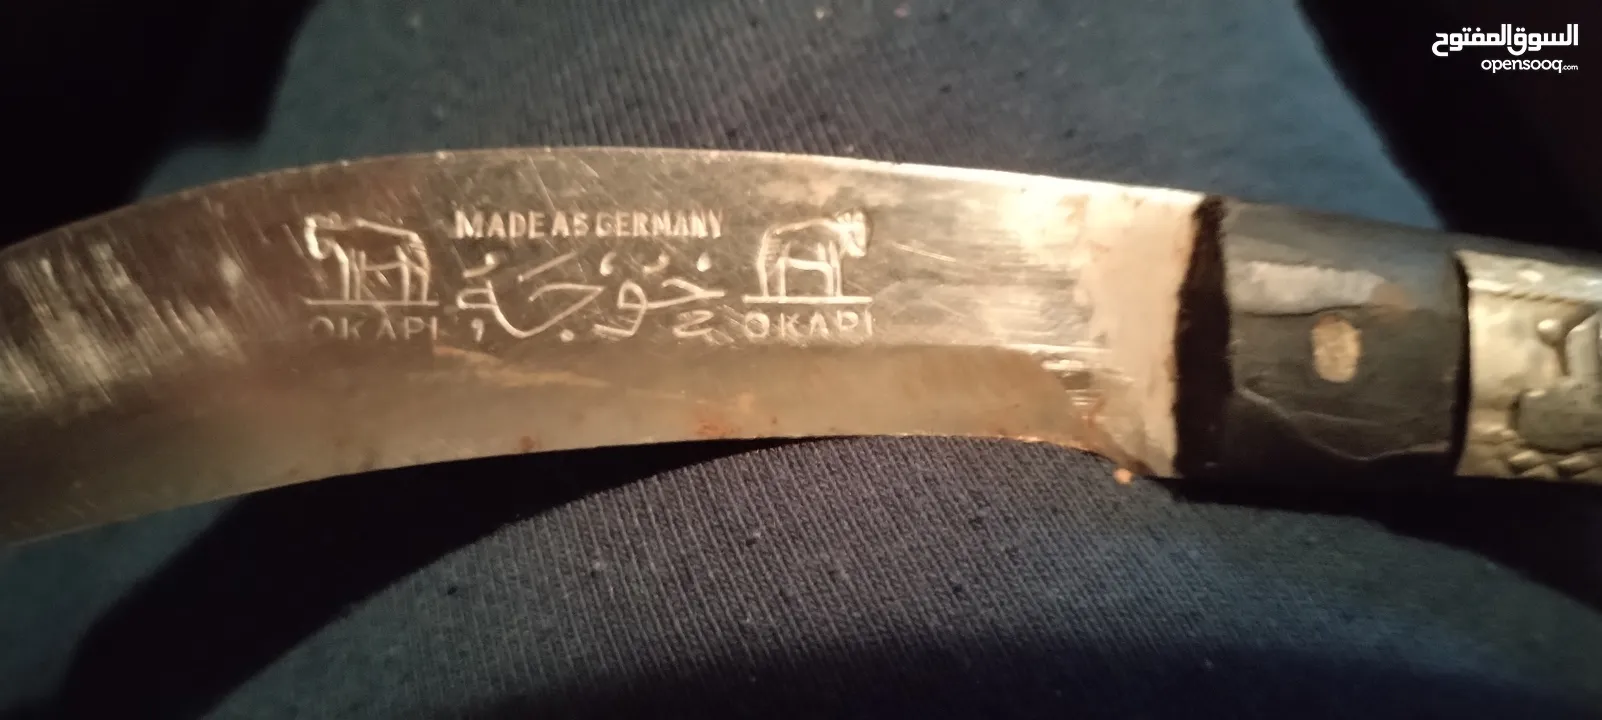 سكين خوجه الماني قديمه قطعه نظيفه مقابض فضه - (215480604) | السوق المفتوح